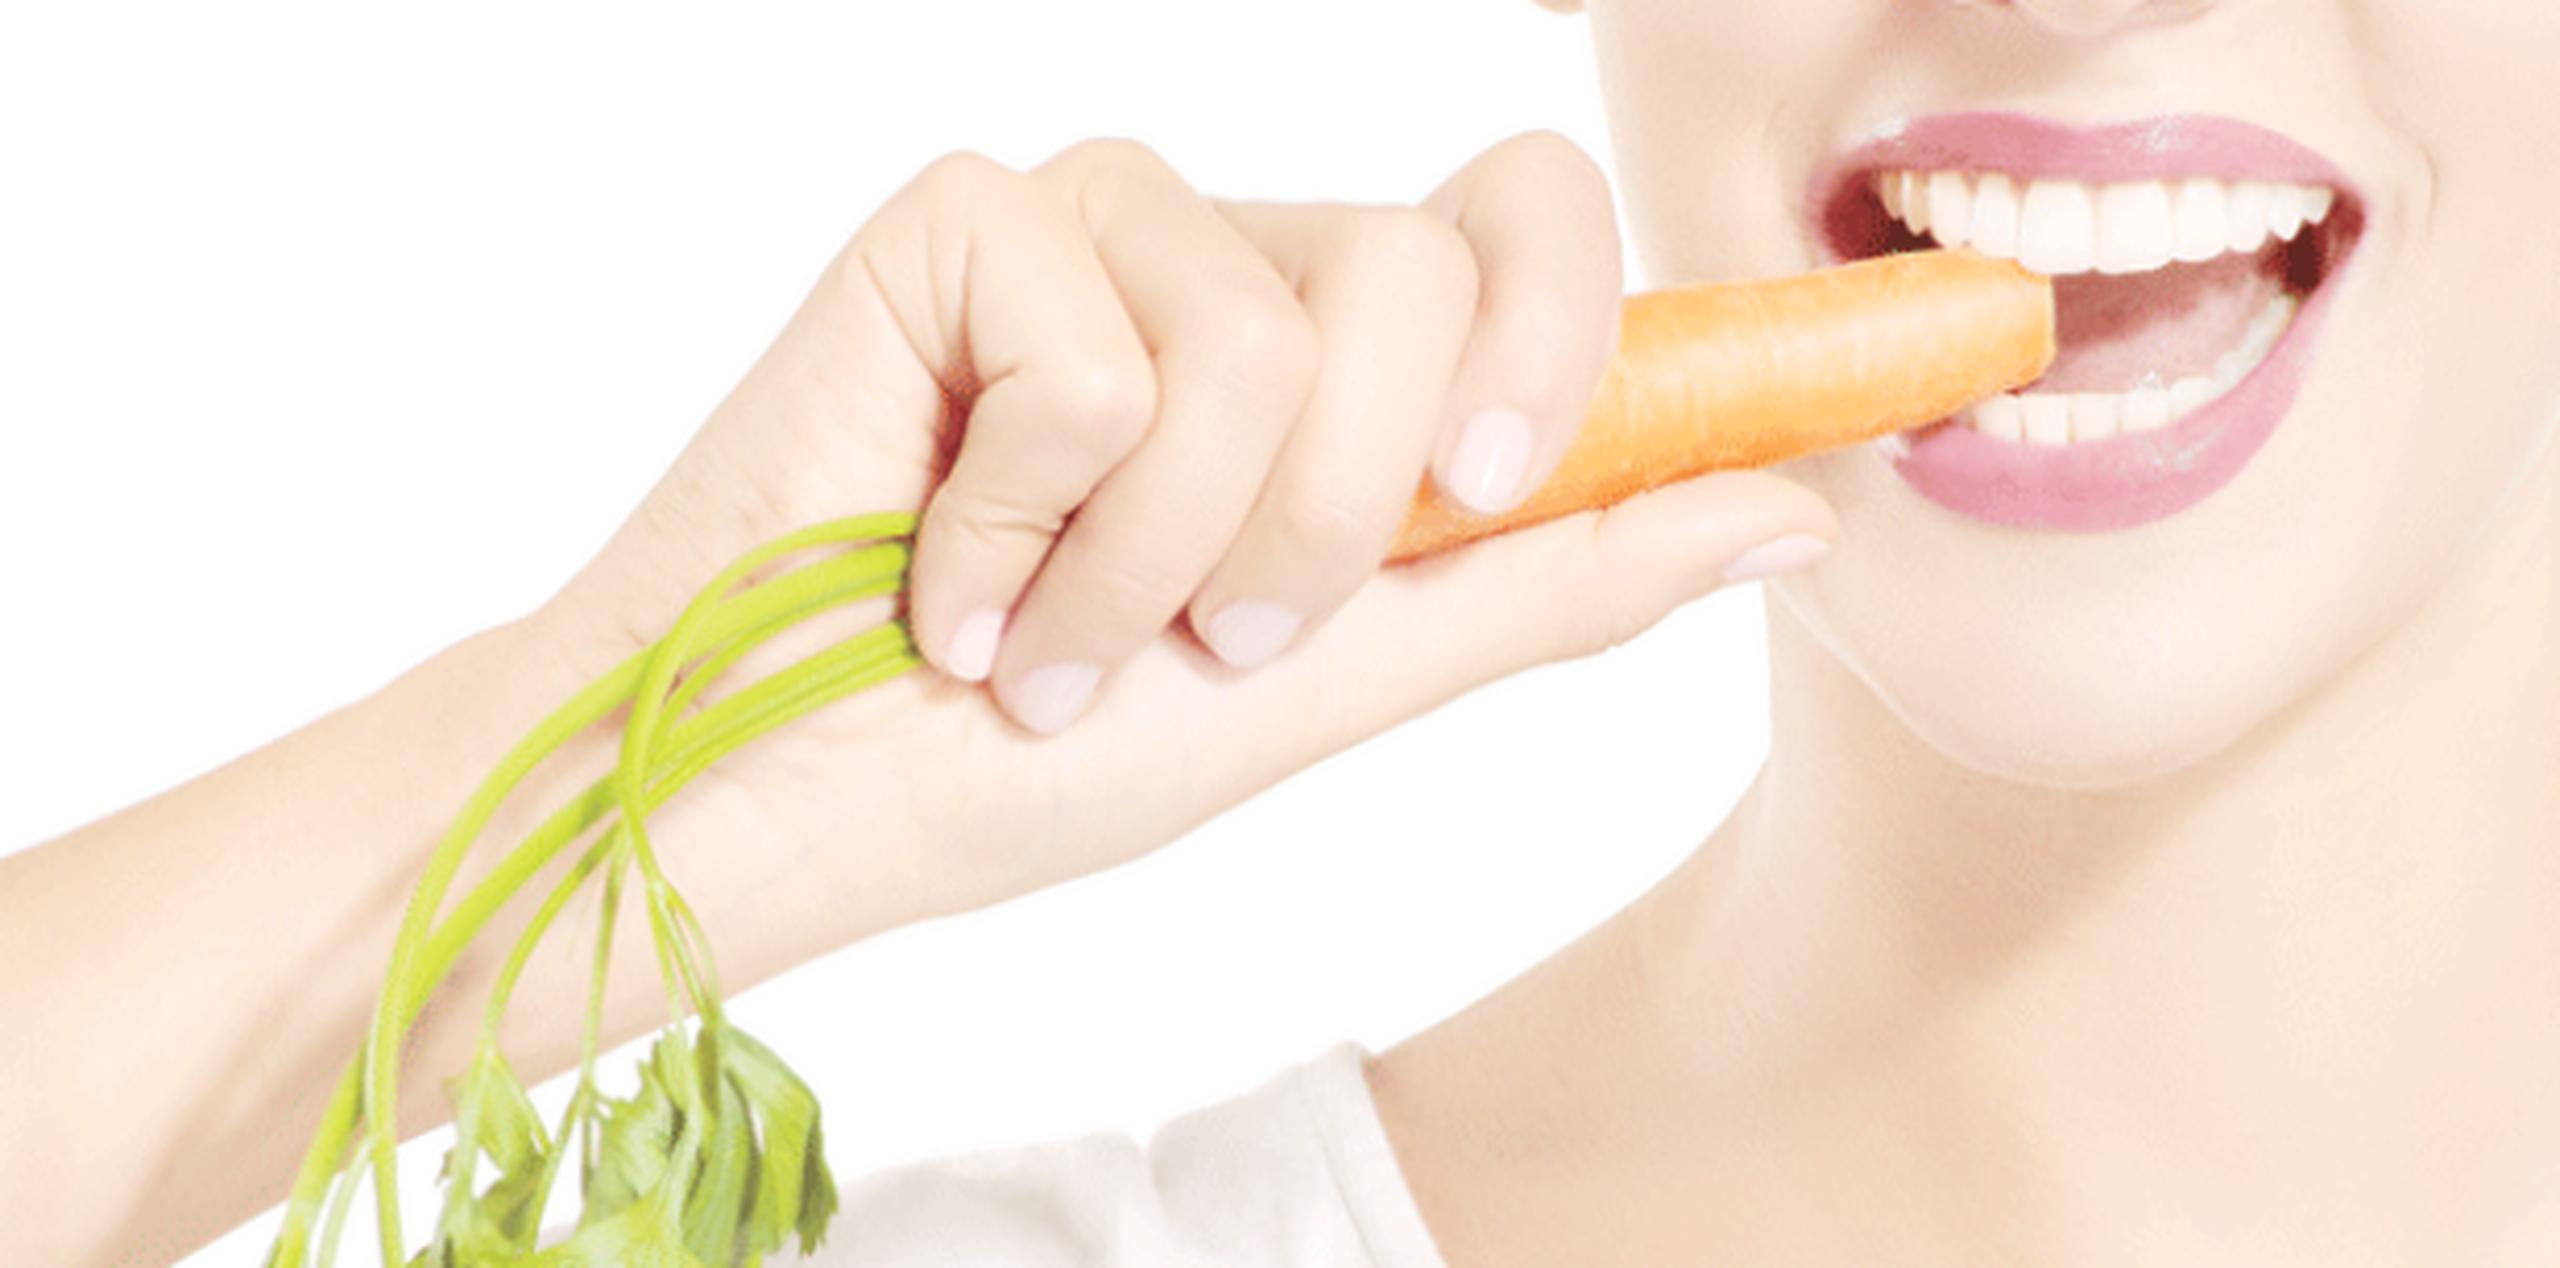 Comer zanahorias no ayuda a recuperar la visión perdida, pero sí a evitar mayores problemas oculares en el futuro. (Archivo)